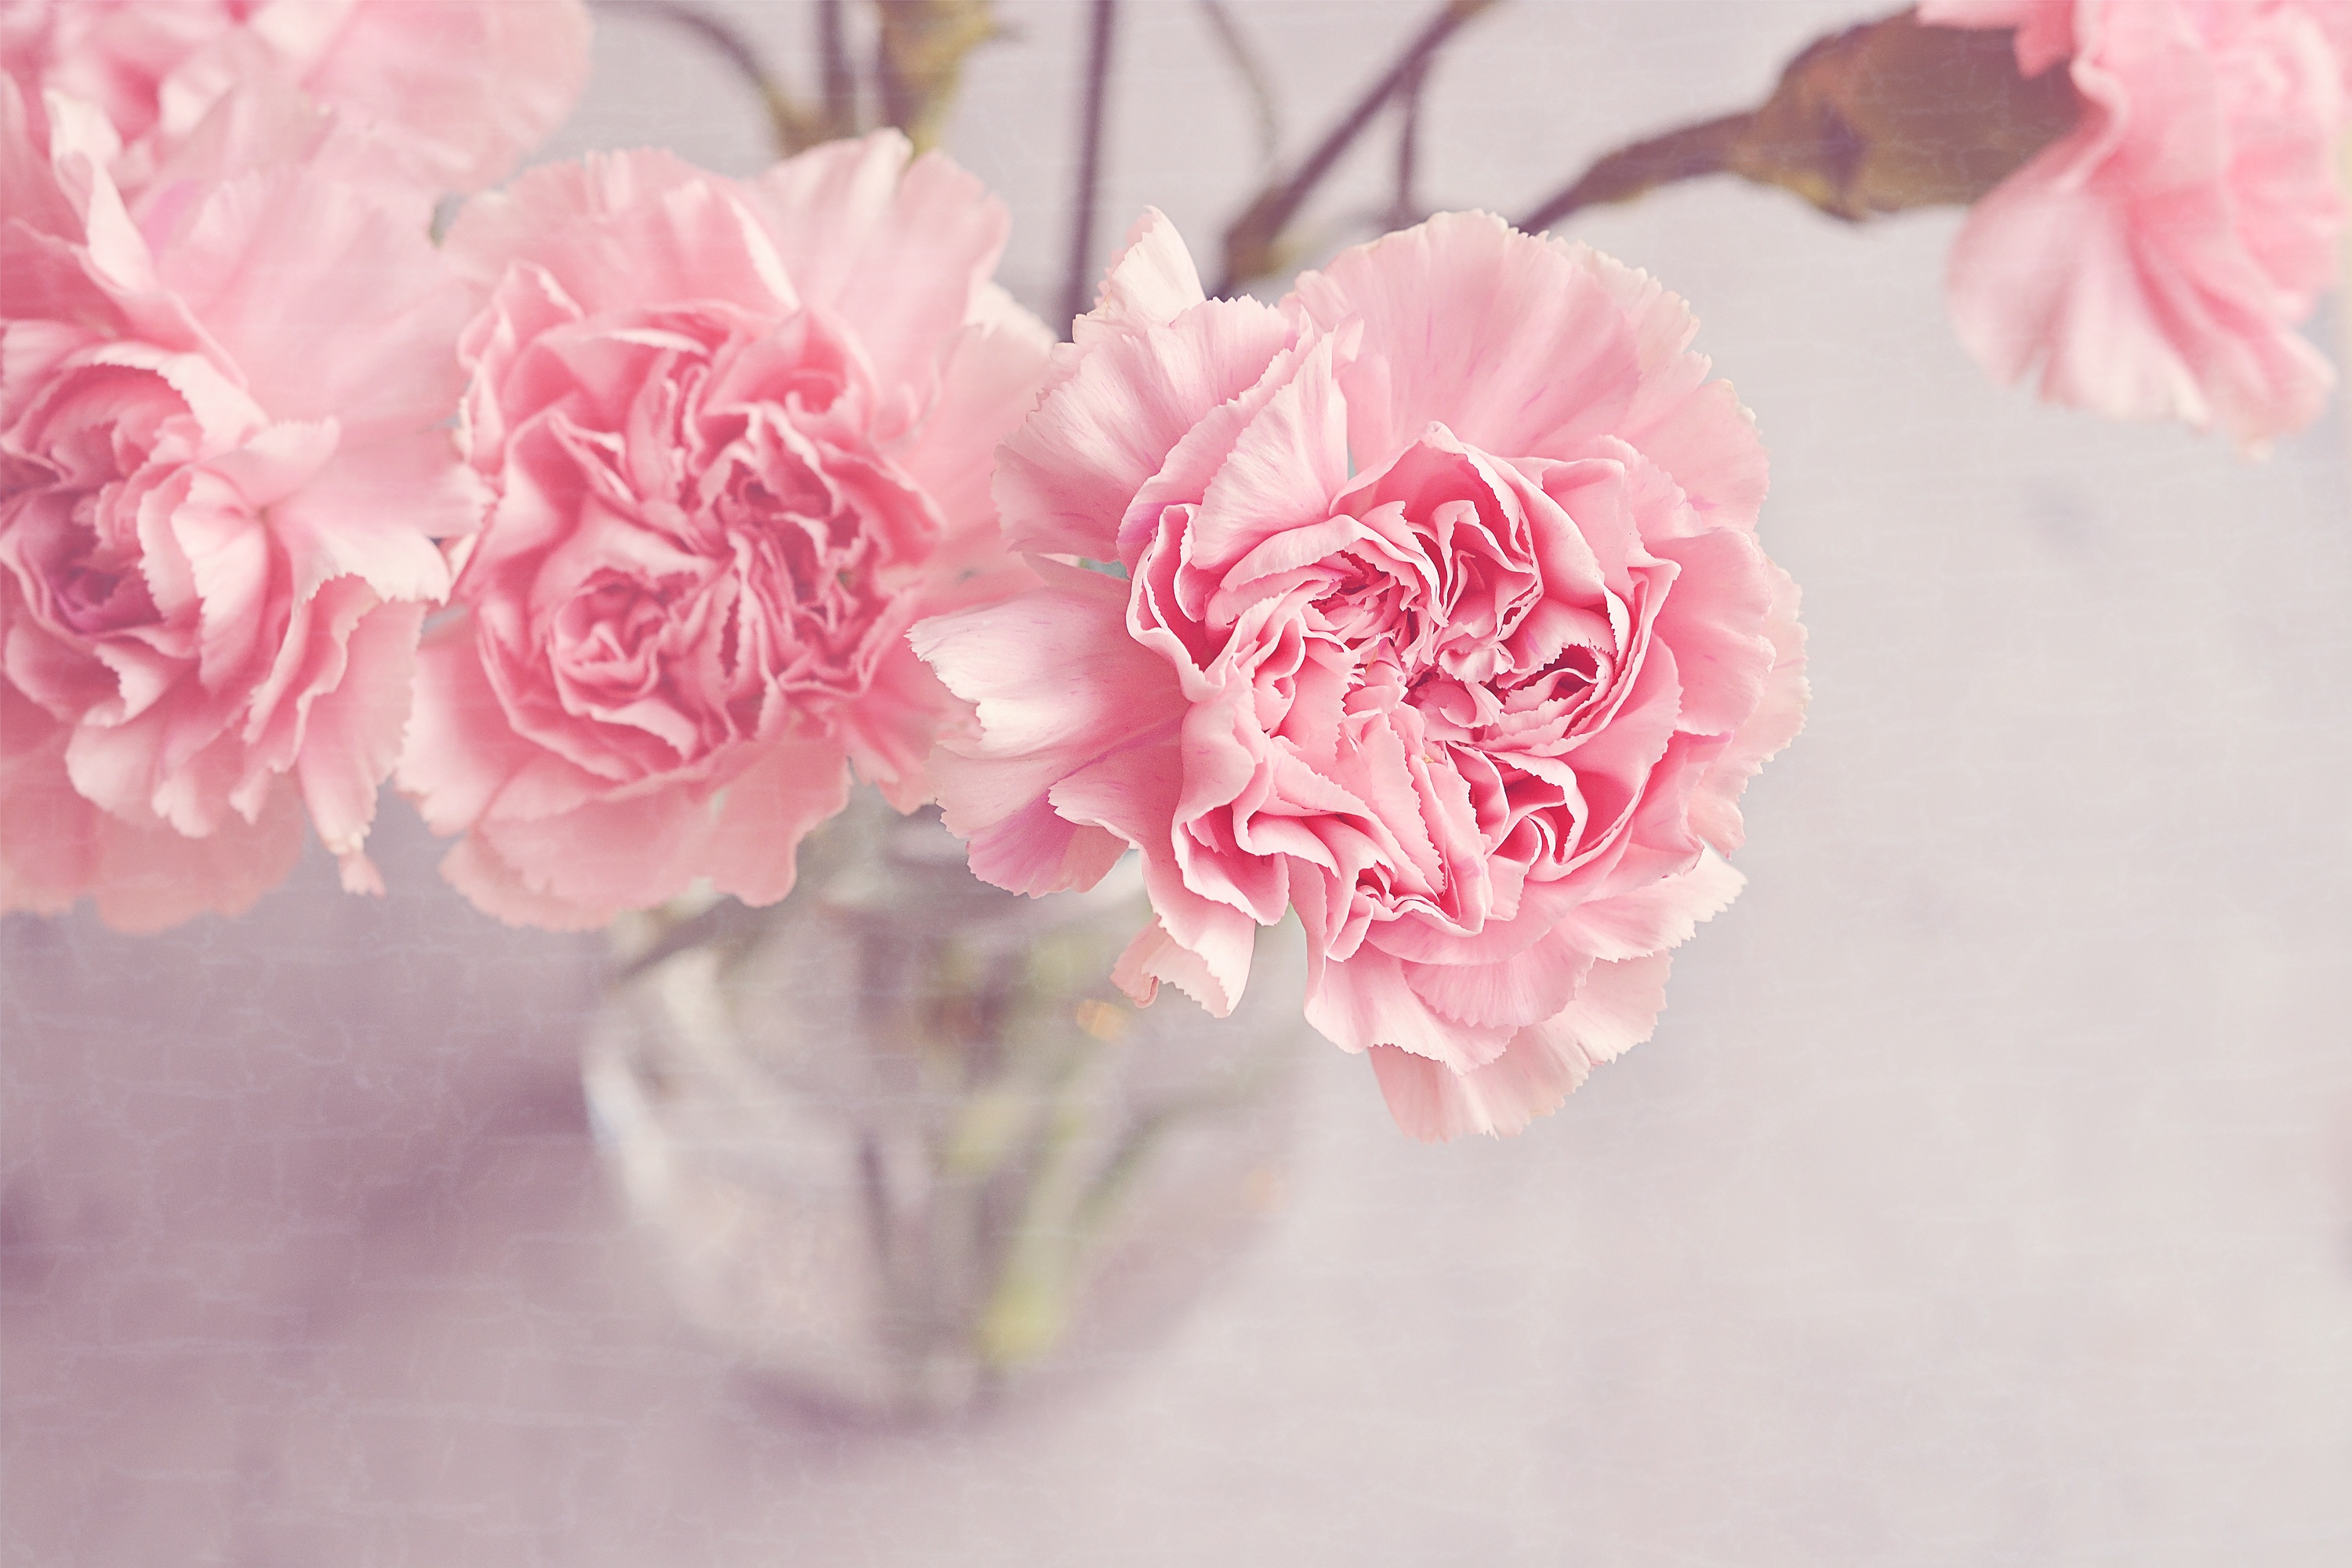 花風水 を実践 部屋にピンクの花を飾って恋愛運をアップしてみよう アラサー34歳女子ハピマリの婚活日記